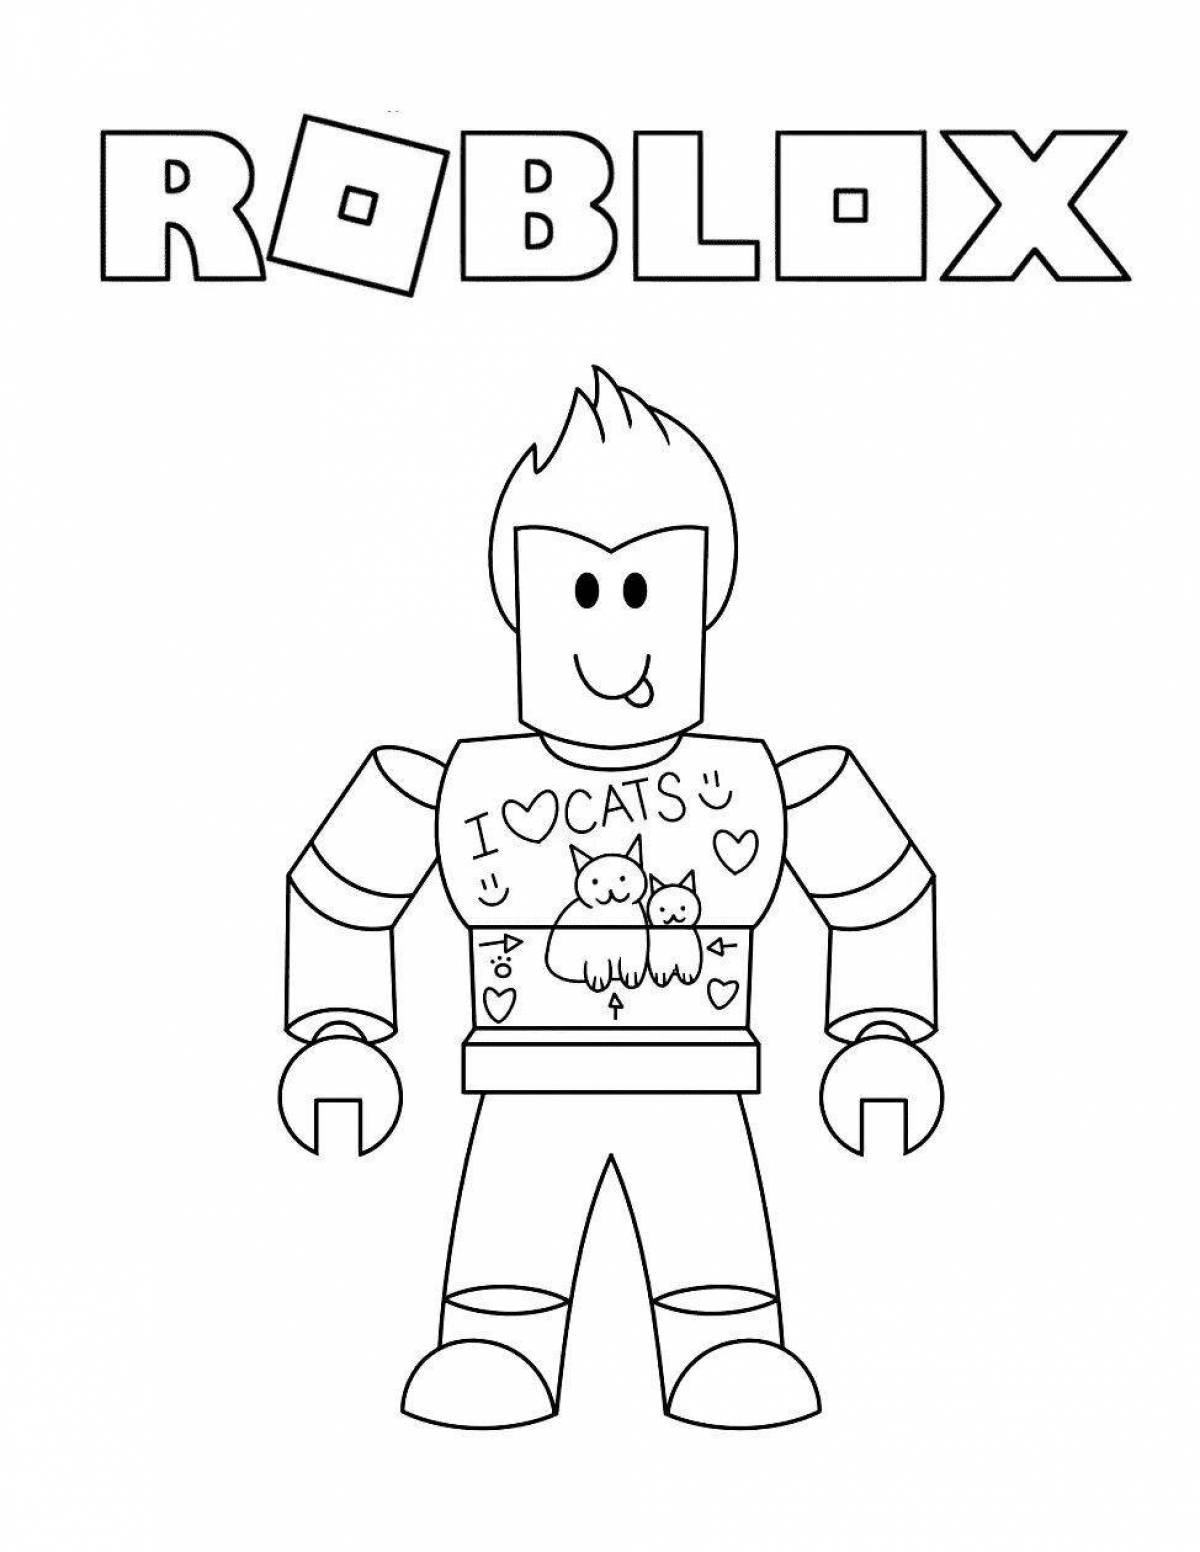 Attractive roblox icon coloring page